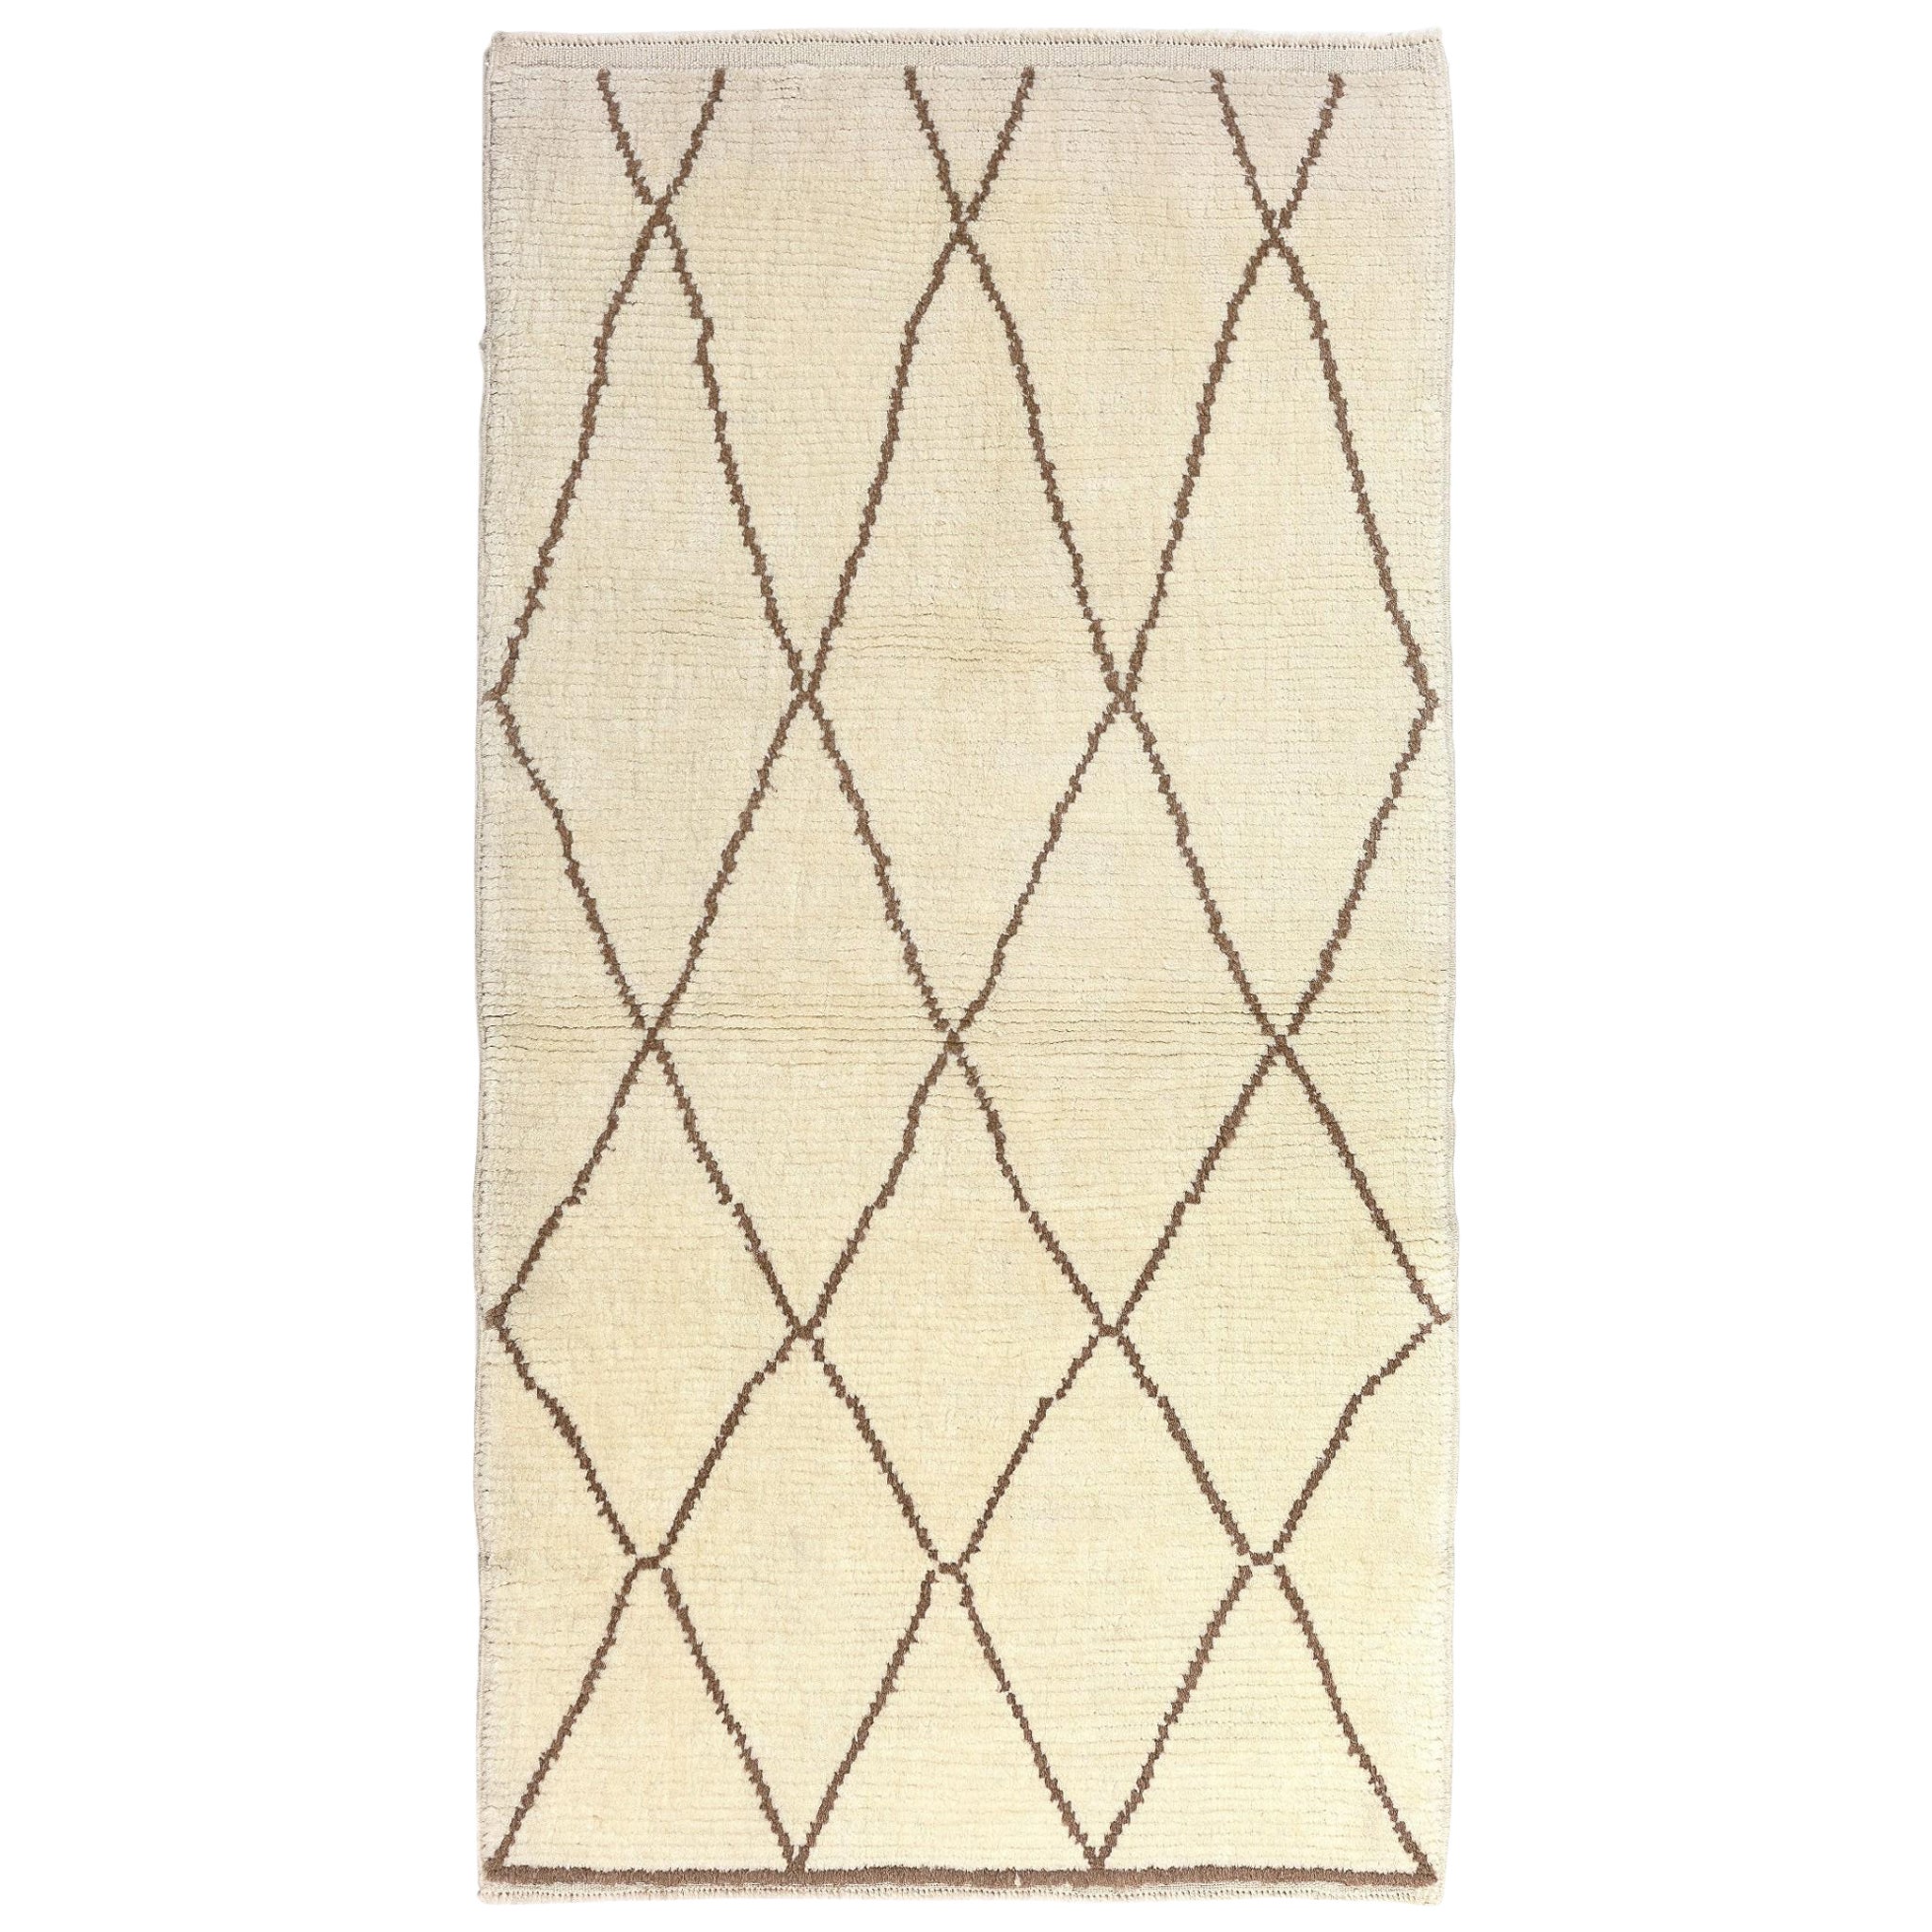 Moderner marokkanischer Teppich mit 3.4x6 Fuß, 100 % natürliche und unbefärbte Wolle, maßgefertigt erhältlich